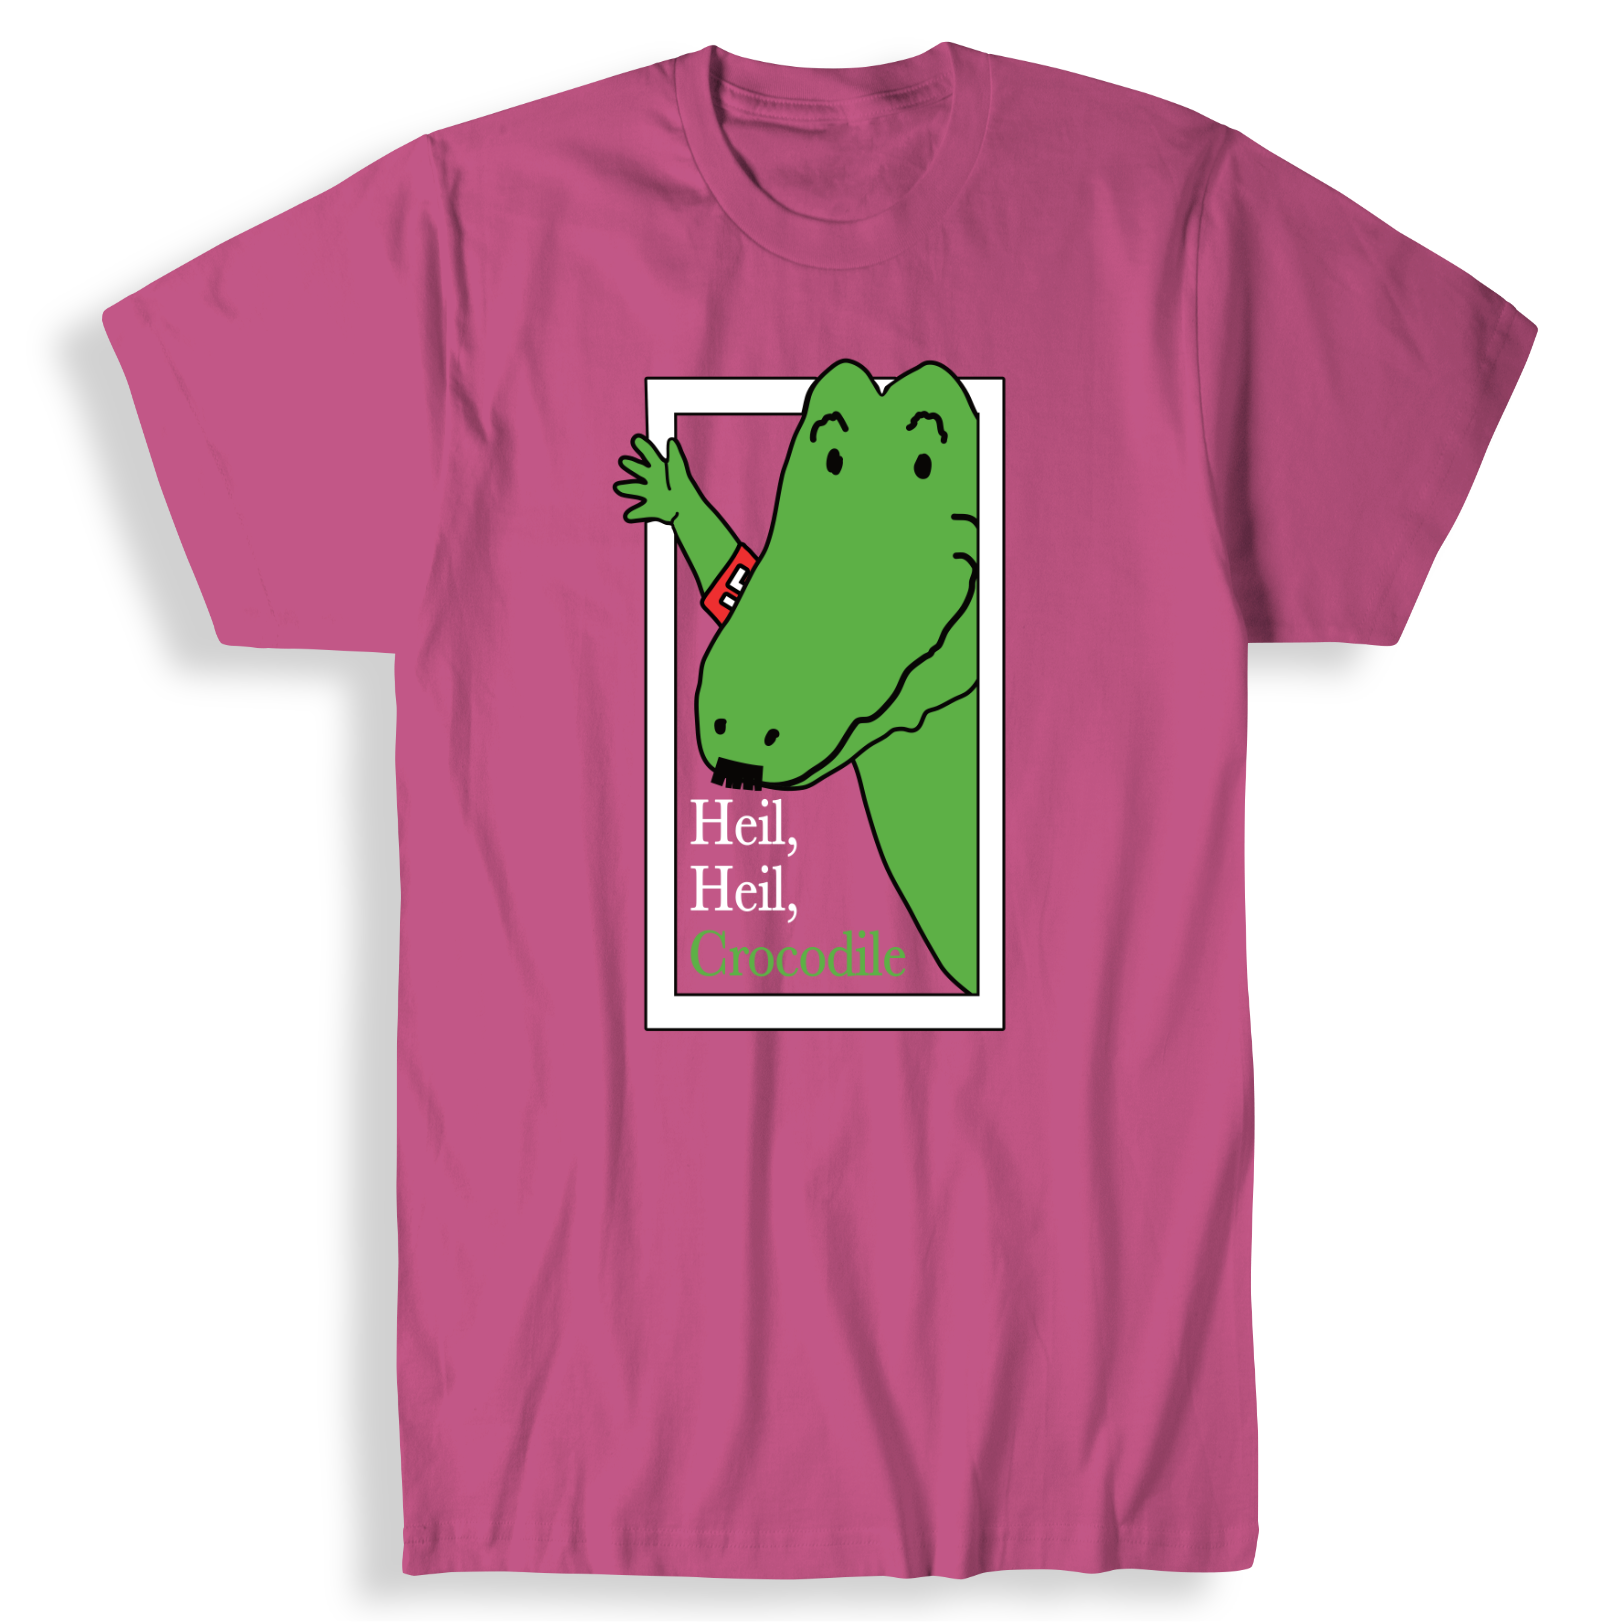 Heil, Heil, Crocodile T-Shirt